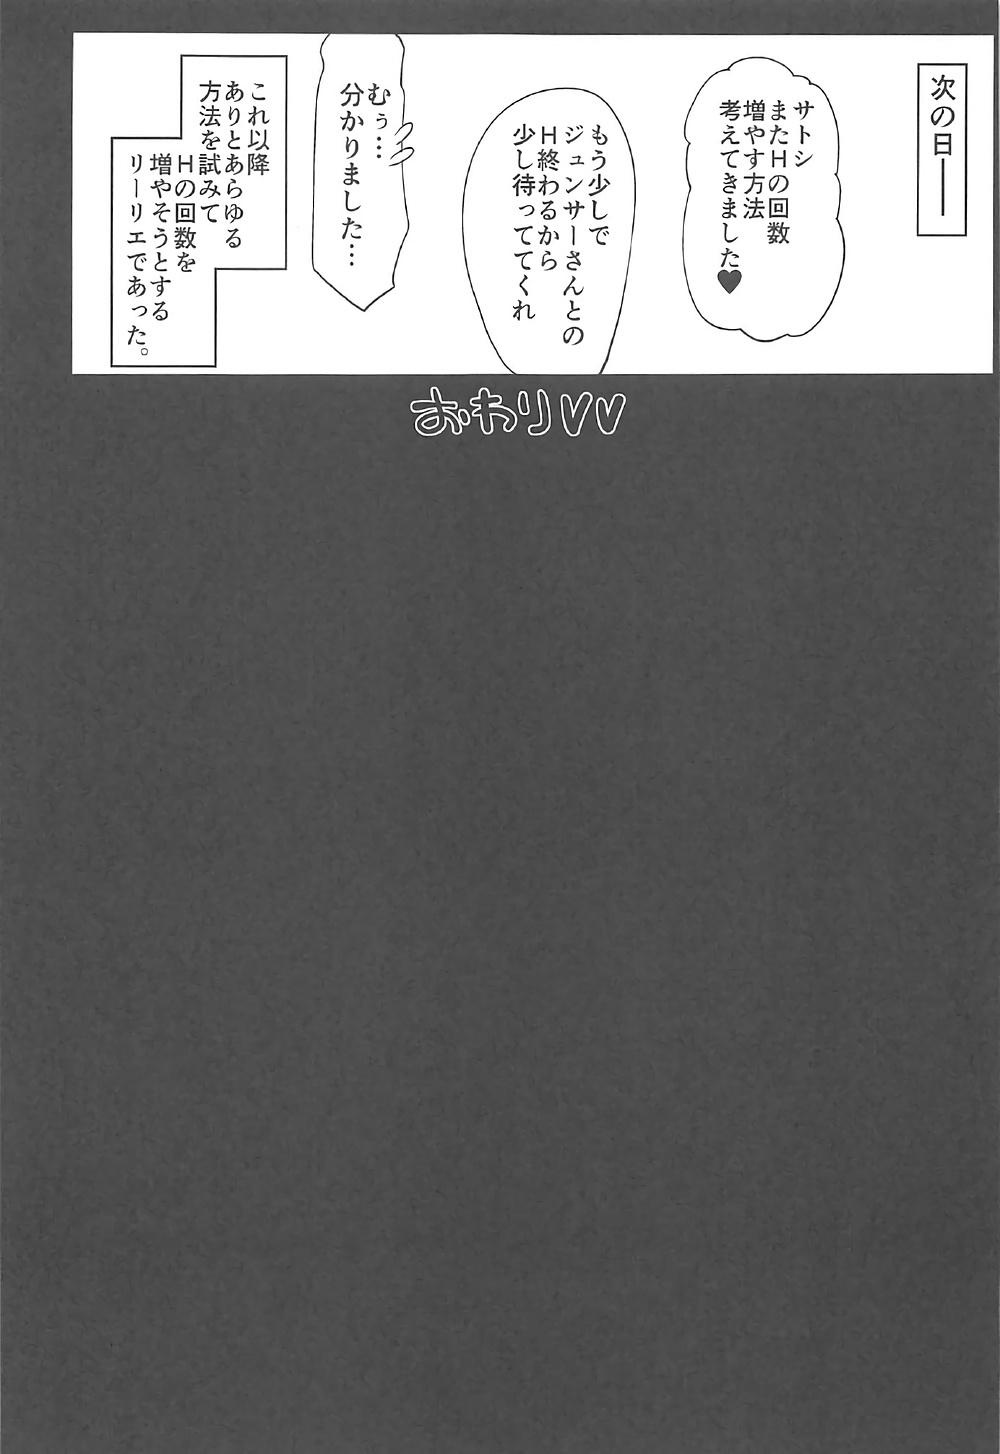 Leather Watashi ga sono Ki ni nareba Ronriteki ni! 2!! - Pokemon Thong - Page 24